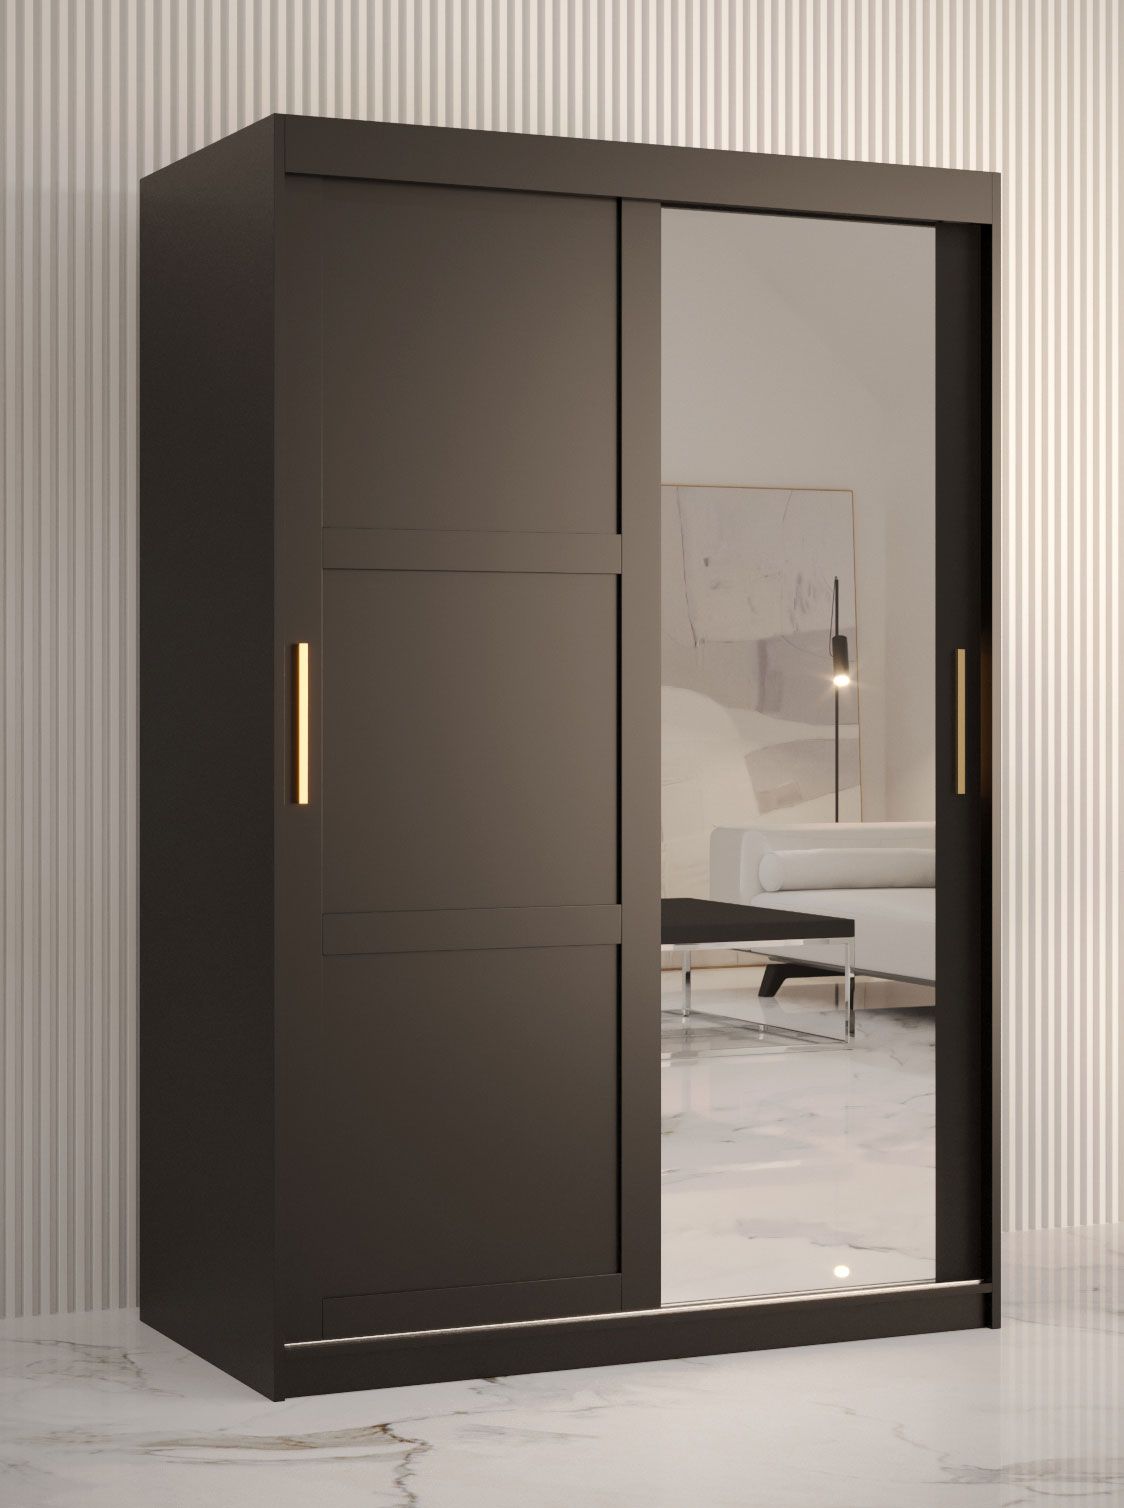 Stijlvolle kledingkast met één deur met spiegel Liskamm 32, kleur: mat zwart - afmetingen: 200 x 120 x 62 cm (H x B x D), met vijf vakken